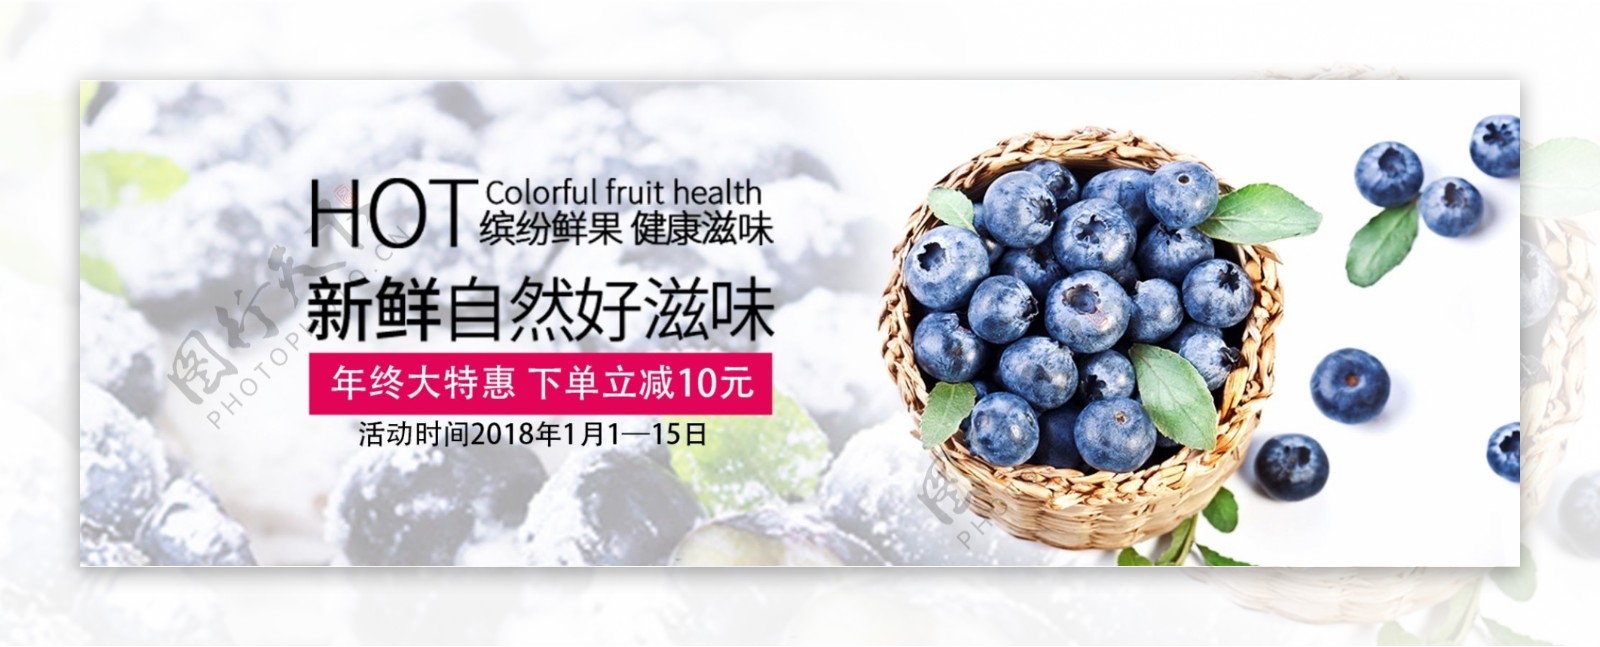 电商淘宝水果蓝莓年终特惠首页海报模板